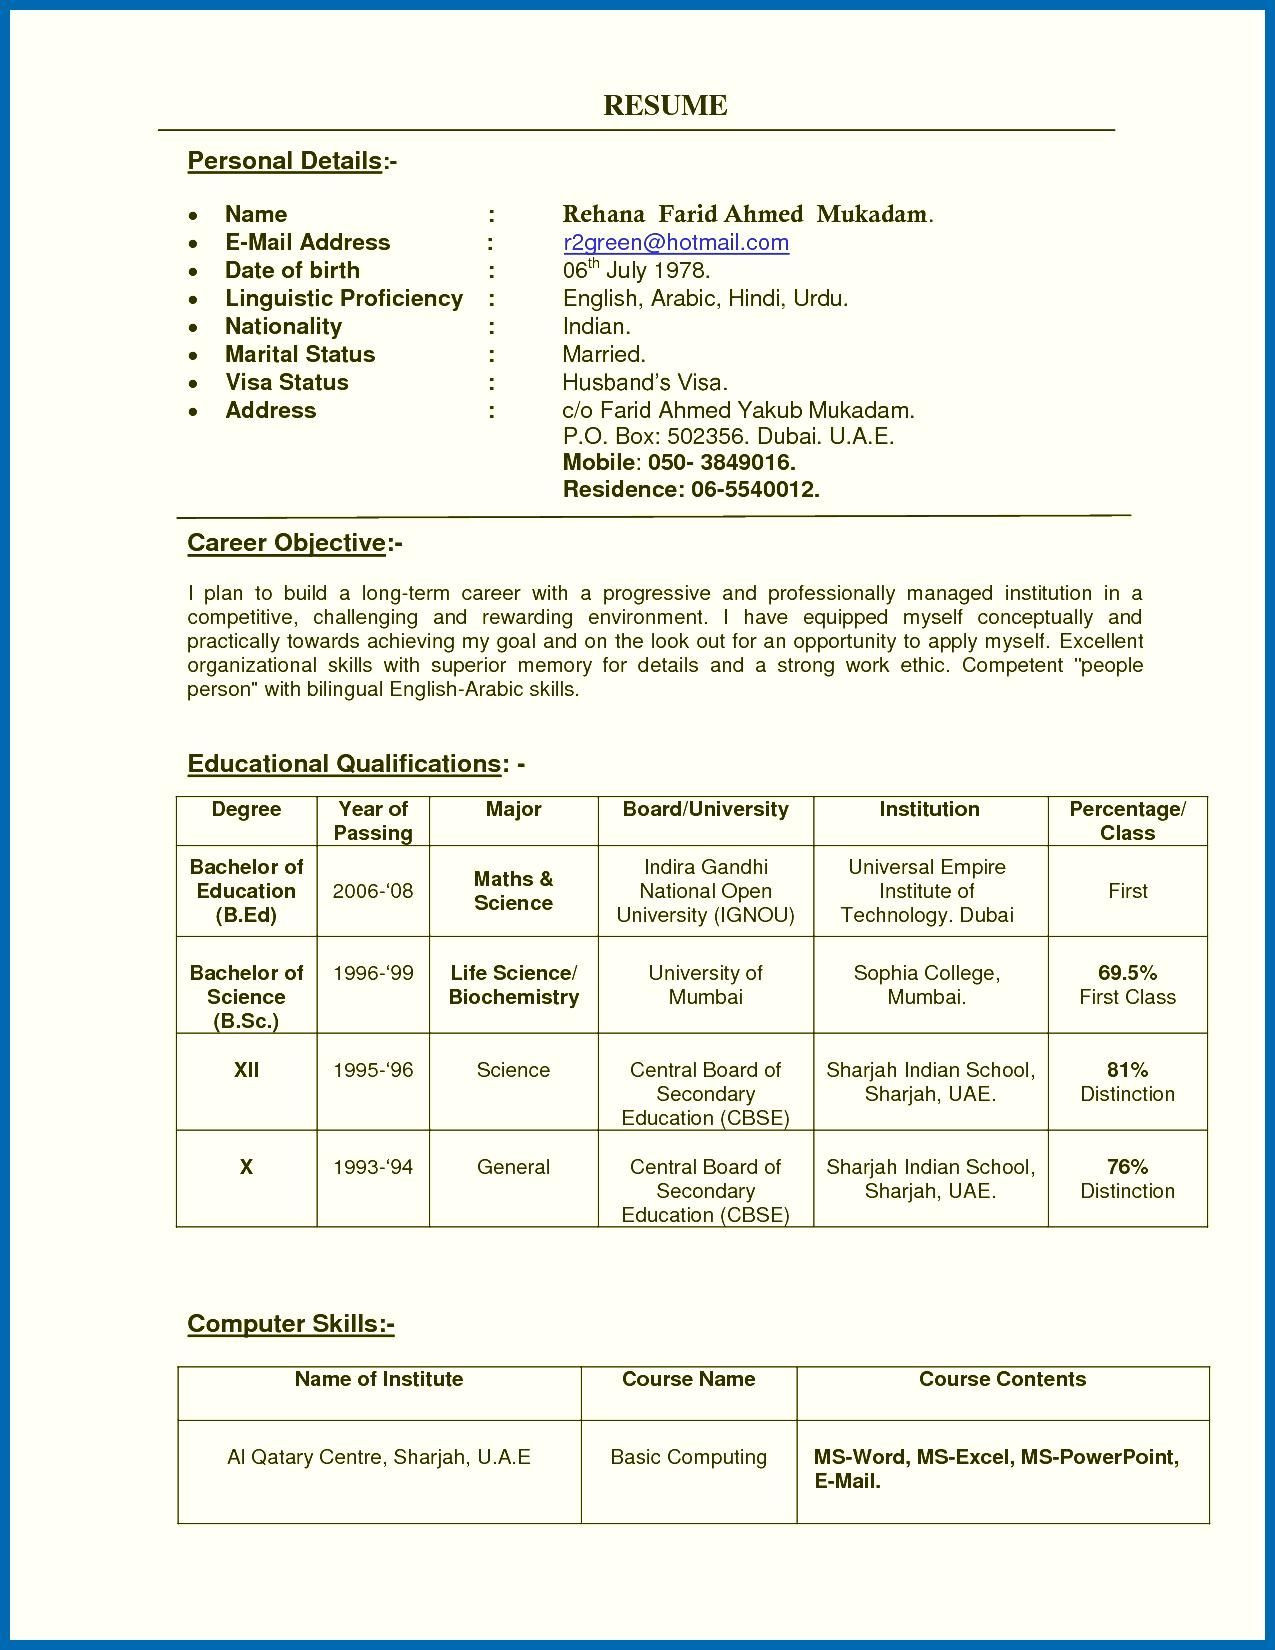 Sample Resume for Teachers In India Resume Of A Teacher India Teachers Resume format India